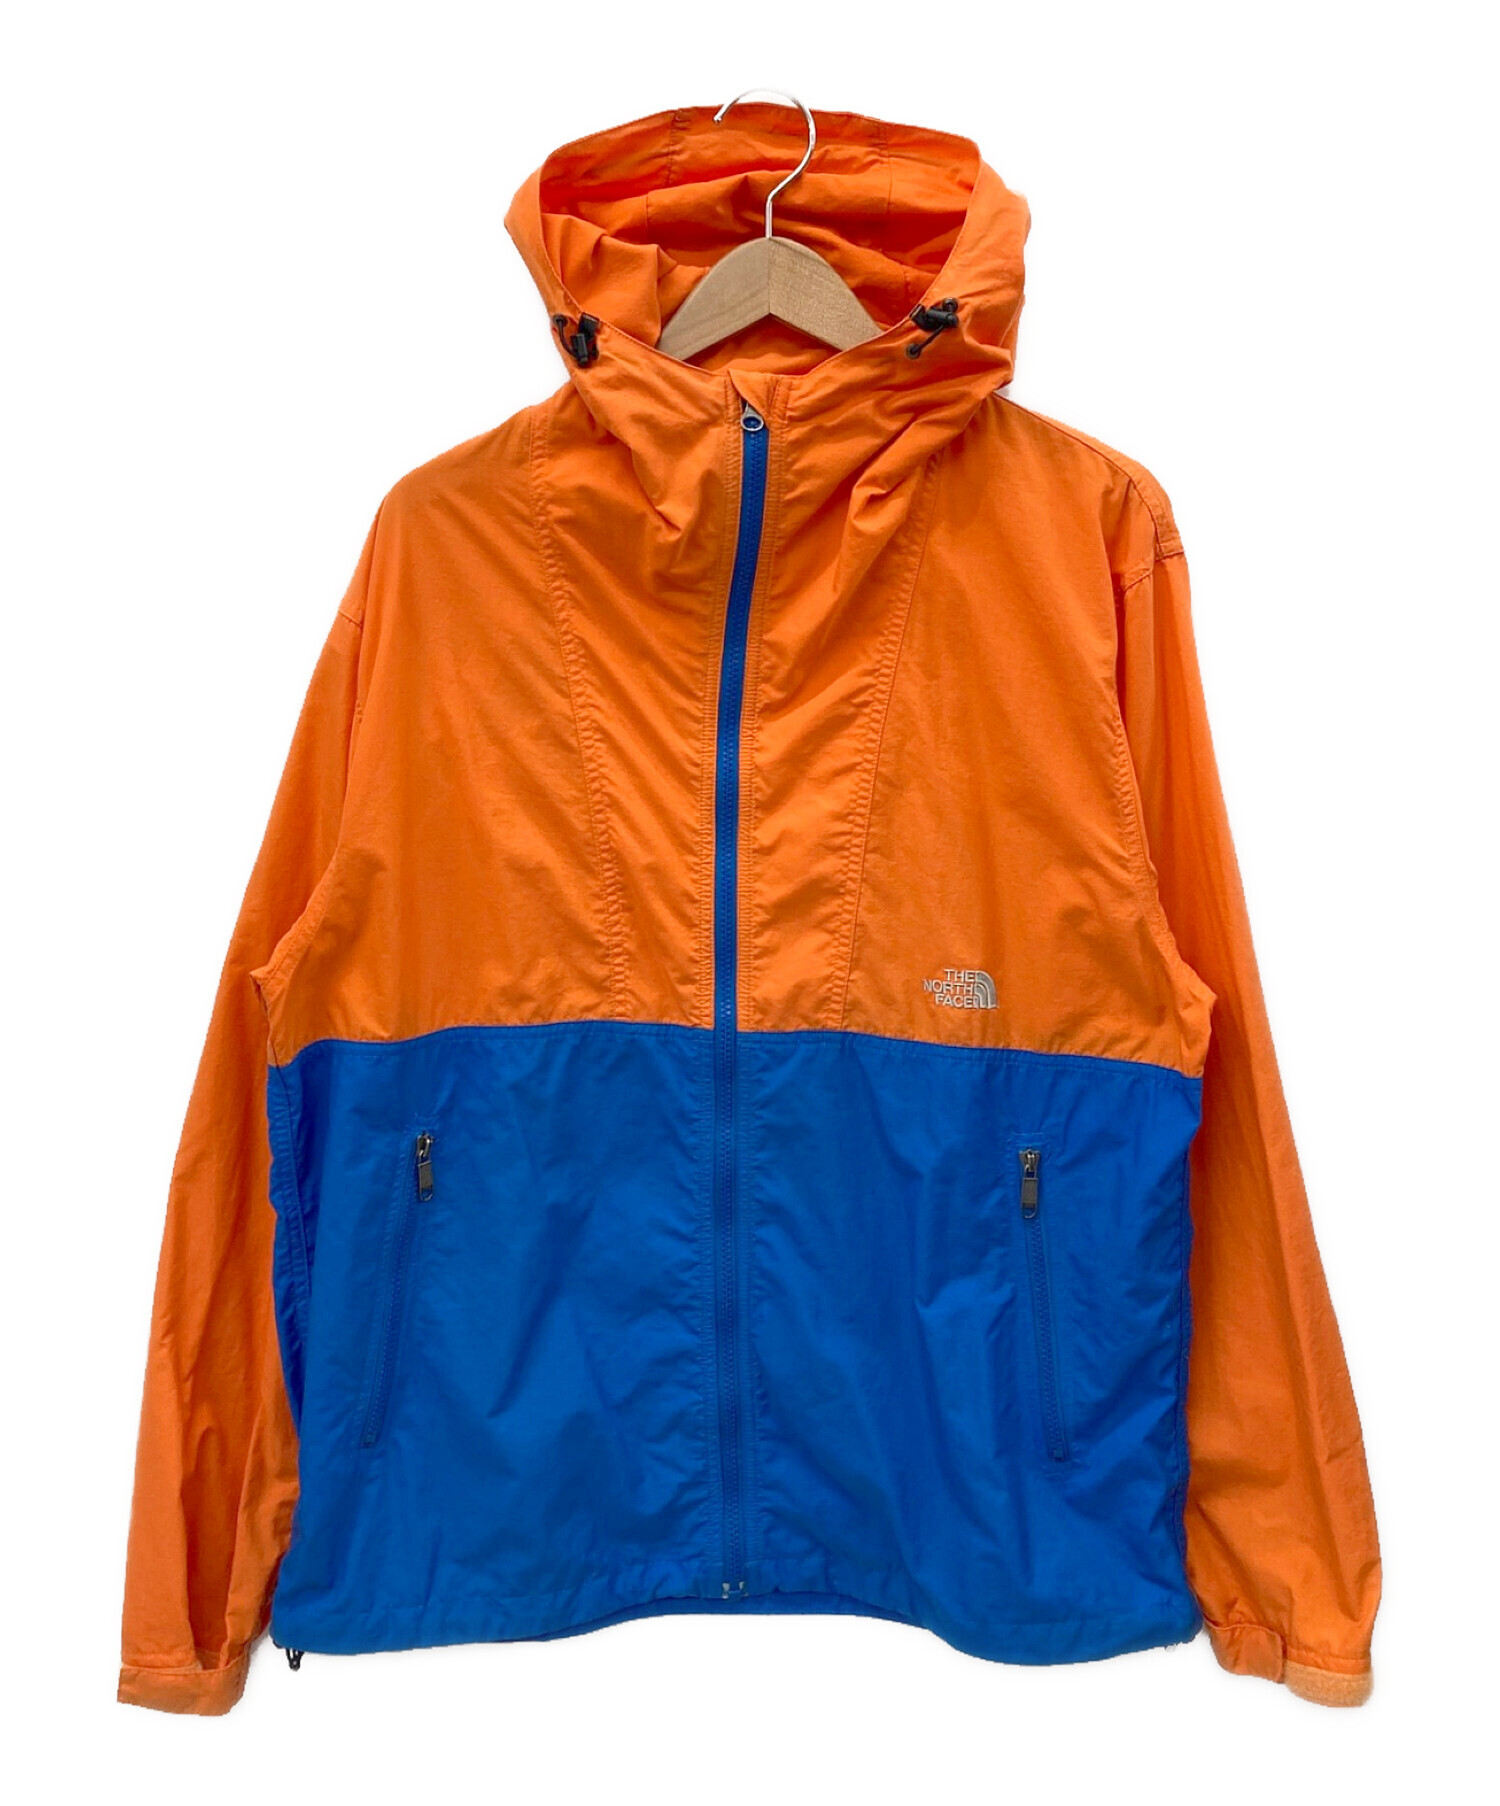 THE NORTH FACE (ザ ノース フェイス) コンパクトジャケット ブルー×オレンジ サイズ:L